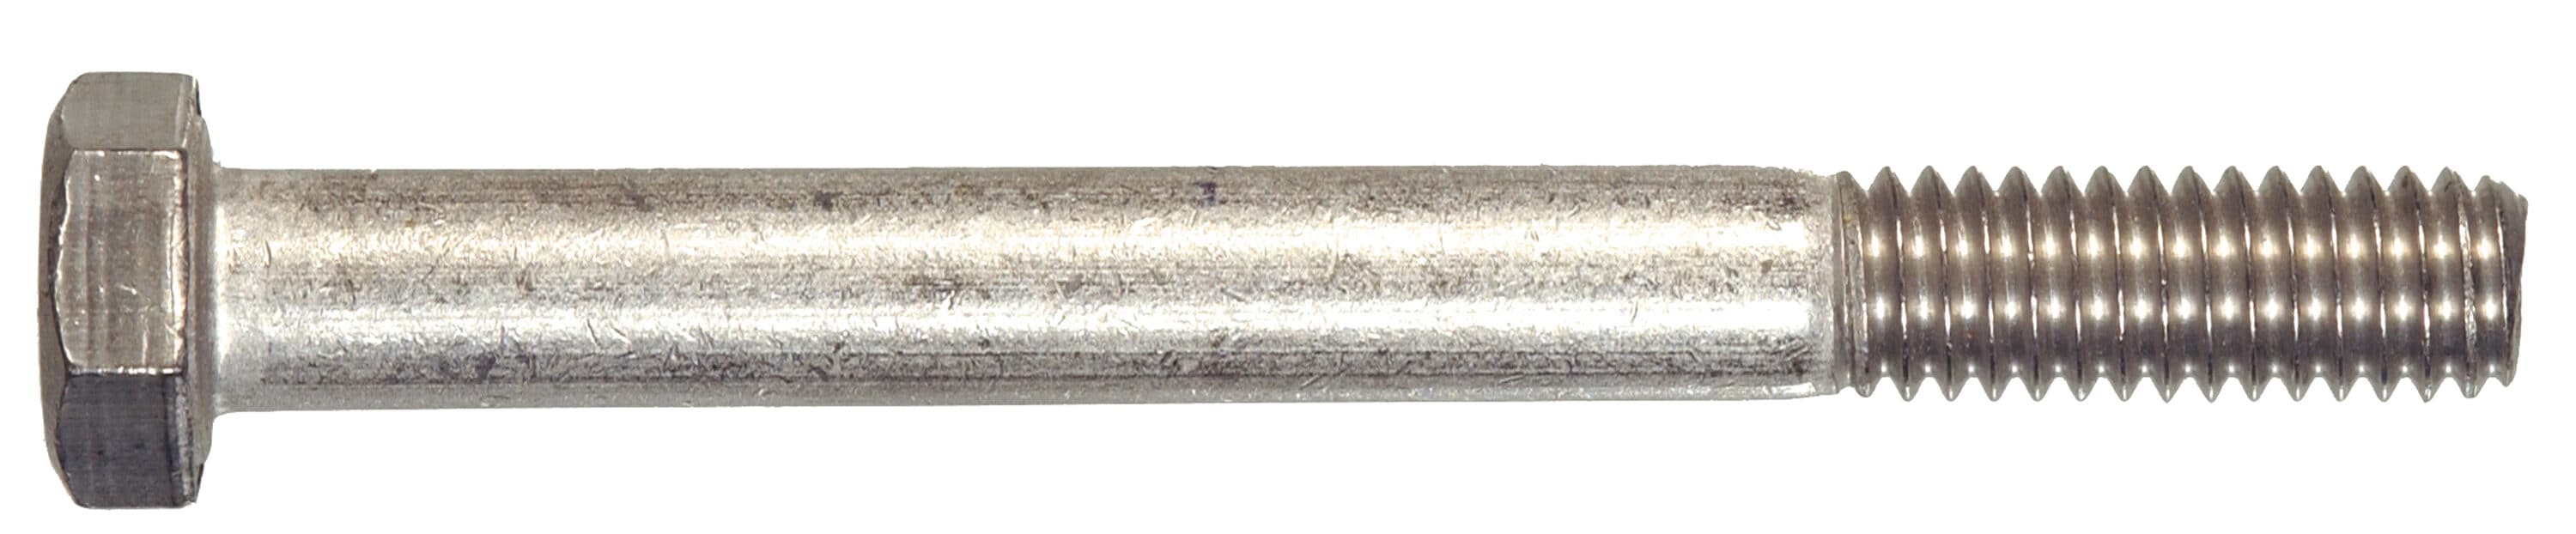 Aluminum Hex Bolts 16-18 Full Thread Hex Cap Screws 16-18 x 2-1 inch QTY 25 - 3